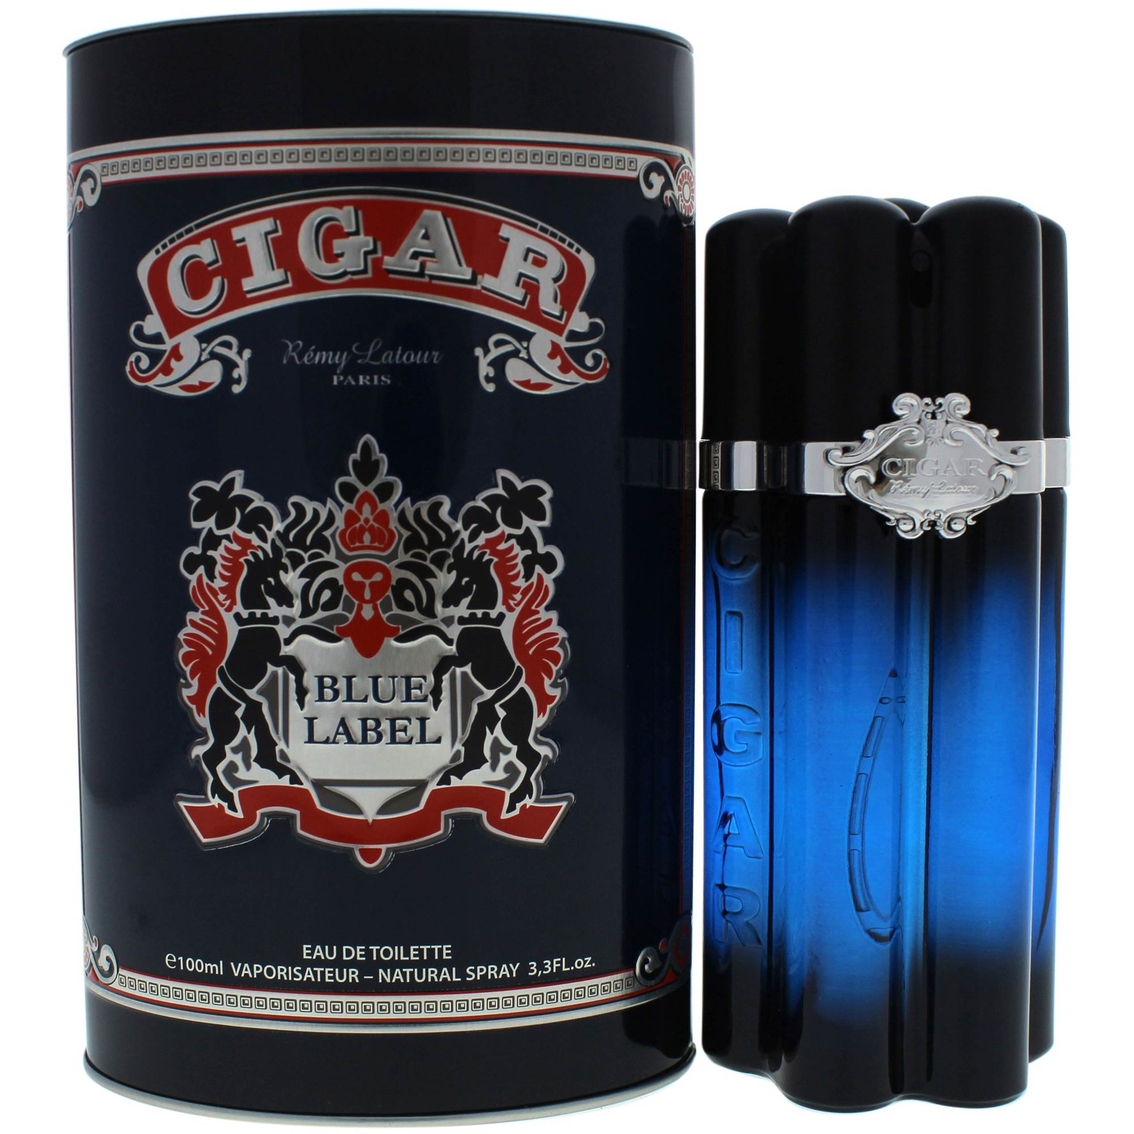 Cigar Blue Label by Remy Latour for Men Eau De Toilette 3.3 oz. Spray - Image 2 of 2